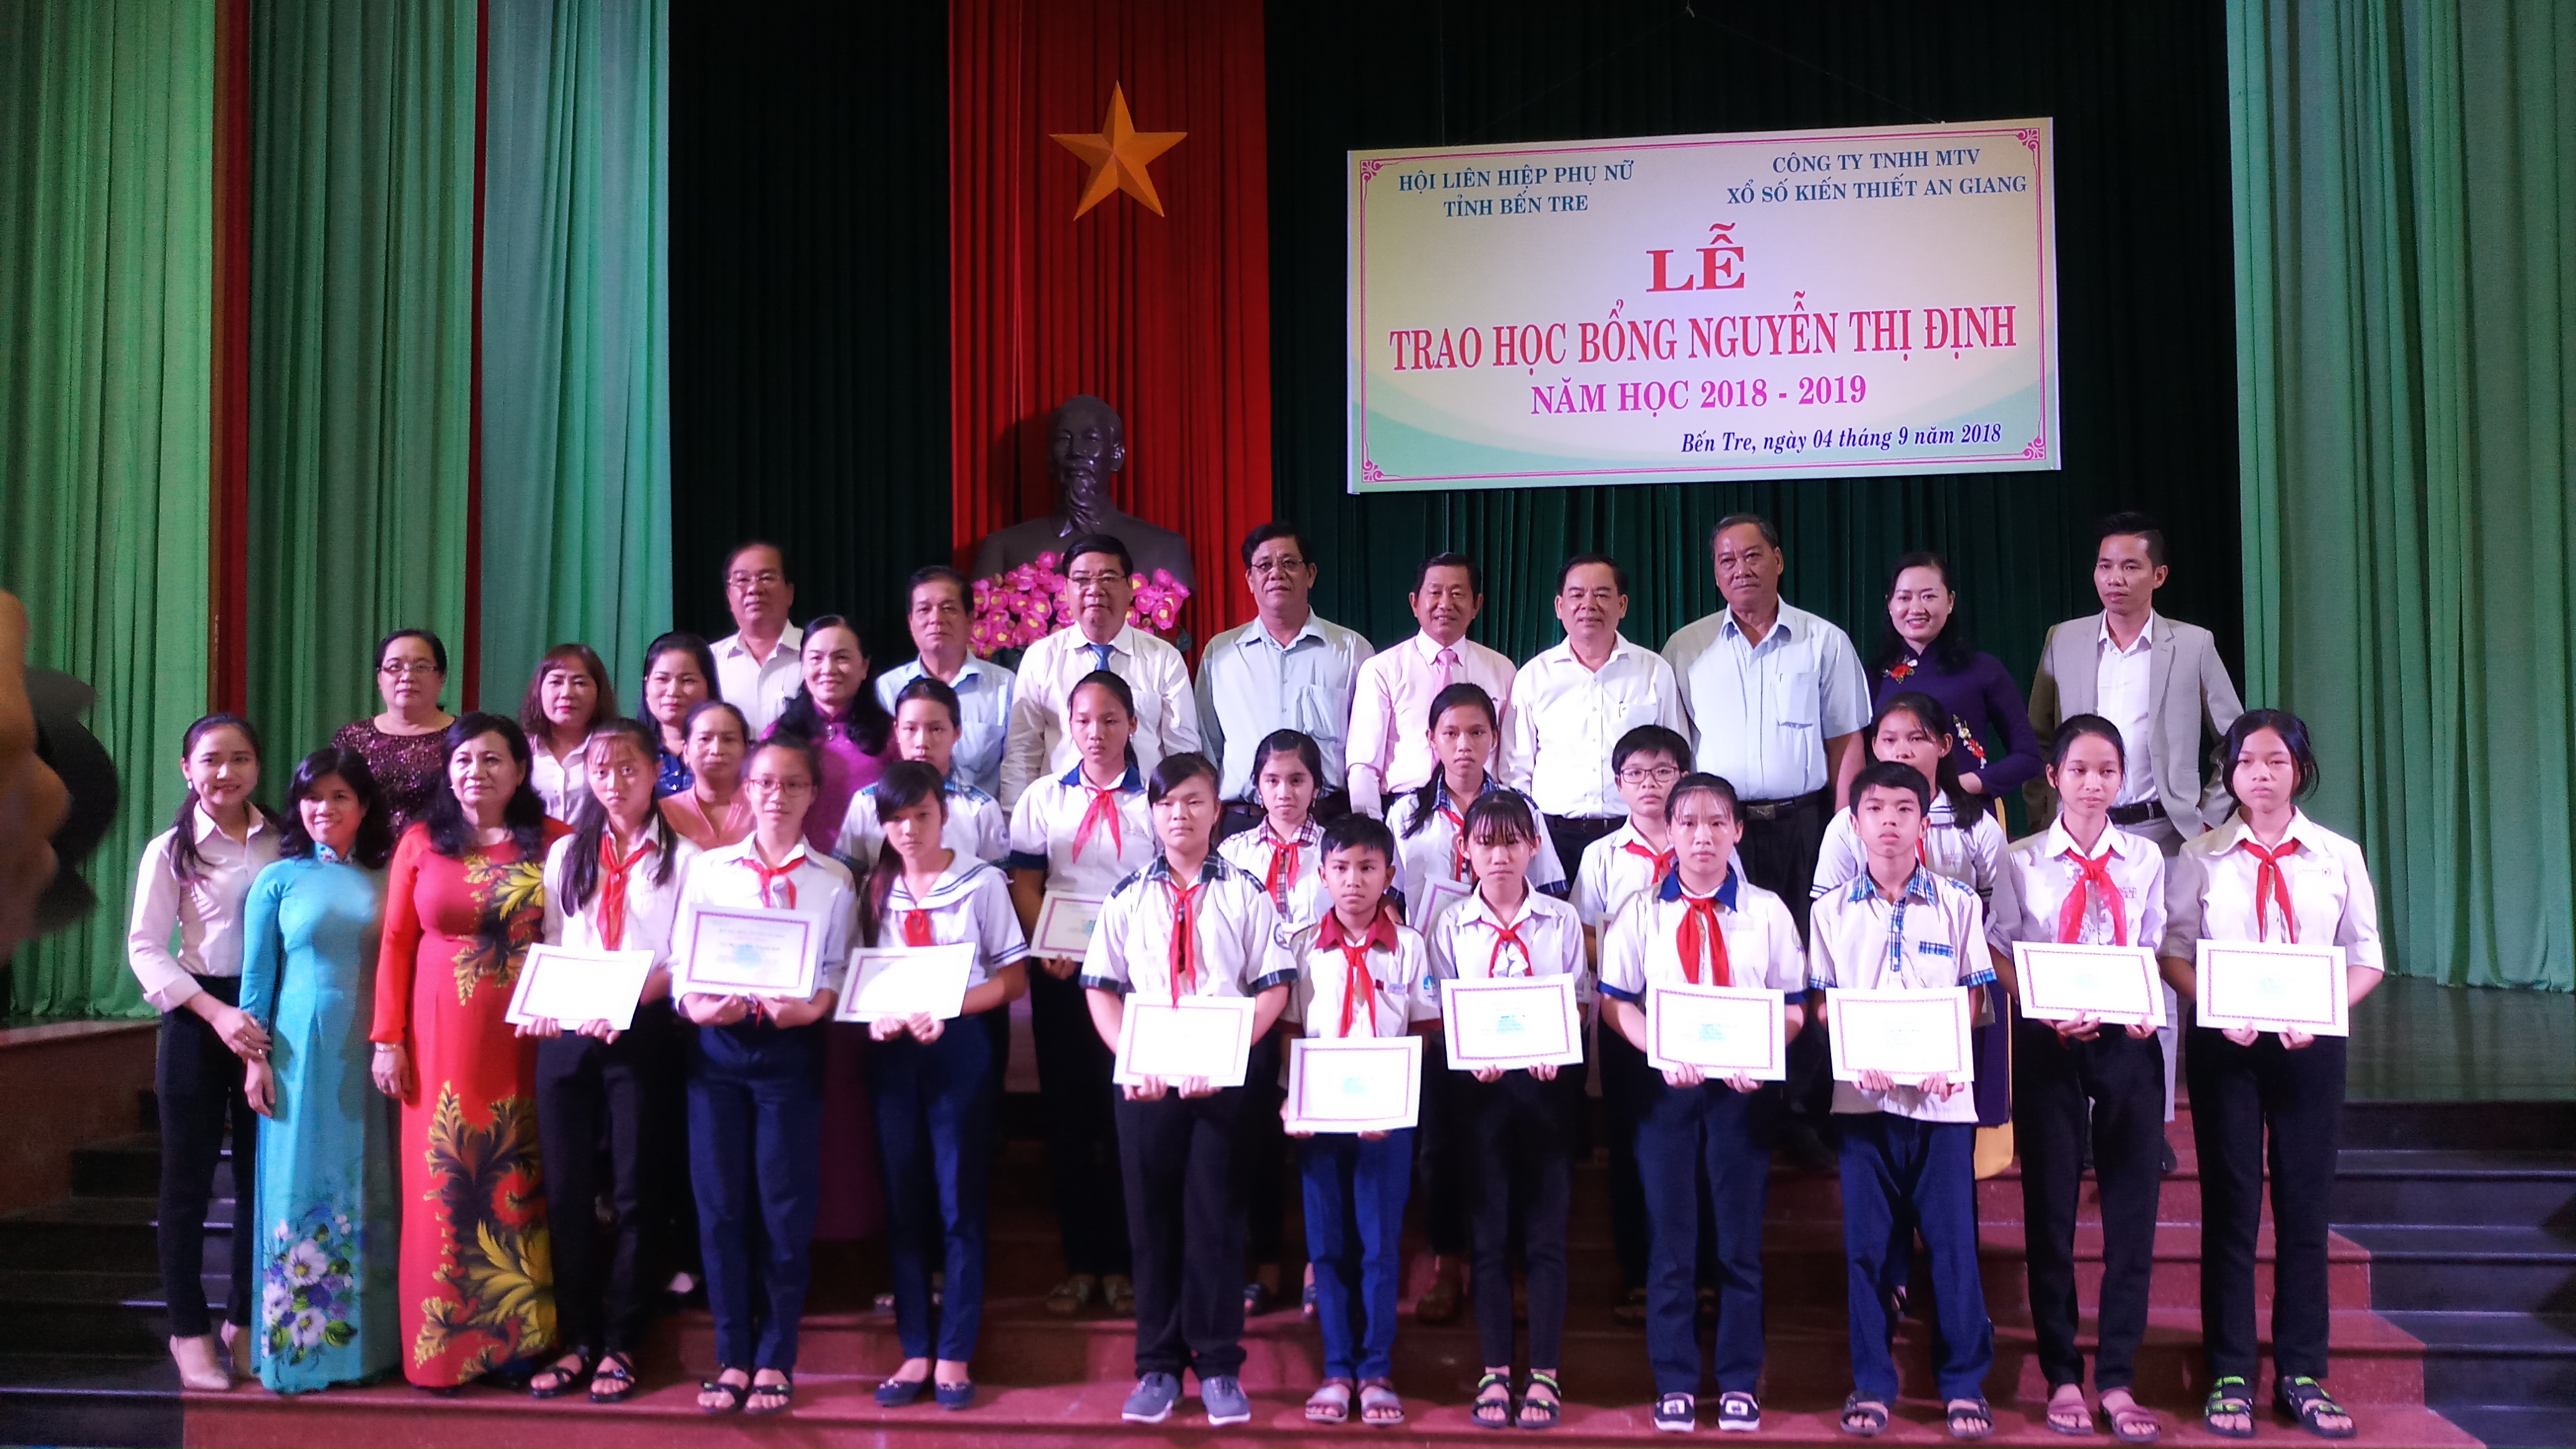 Lãnh đạo Tỉnh ủy, UBND, Hội LHPN tỉnh và các đơn vị tài trợ chụp ảnh lưu niệm với các em học sinh nhận học bổng